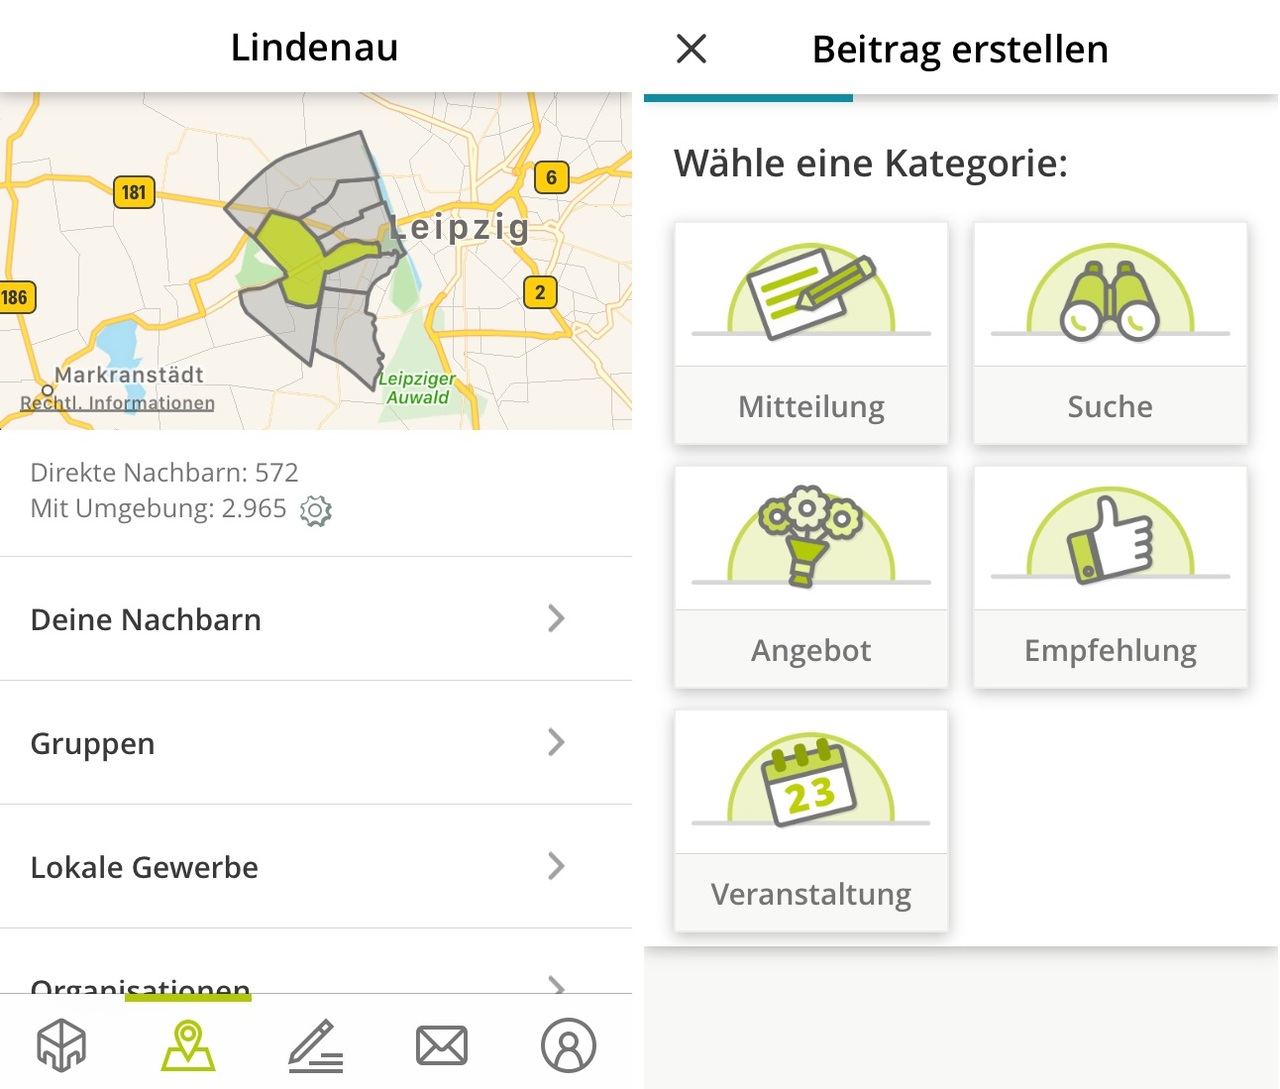 Nachbarschafts-Apps: Wie ist das mit dem Datenschutz? - Digital - plattboden-portal.de